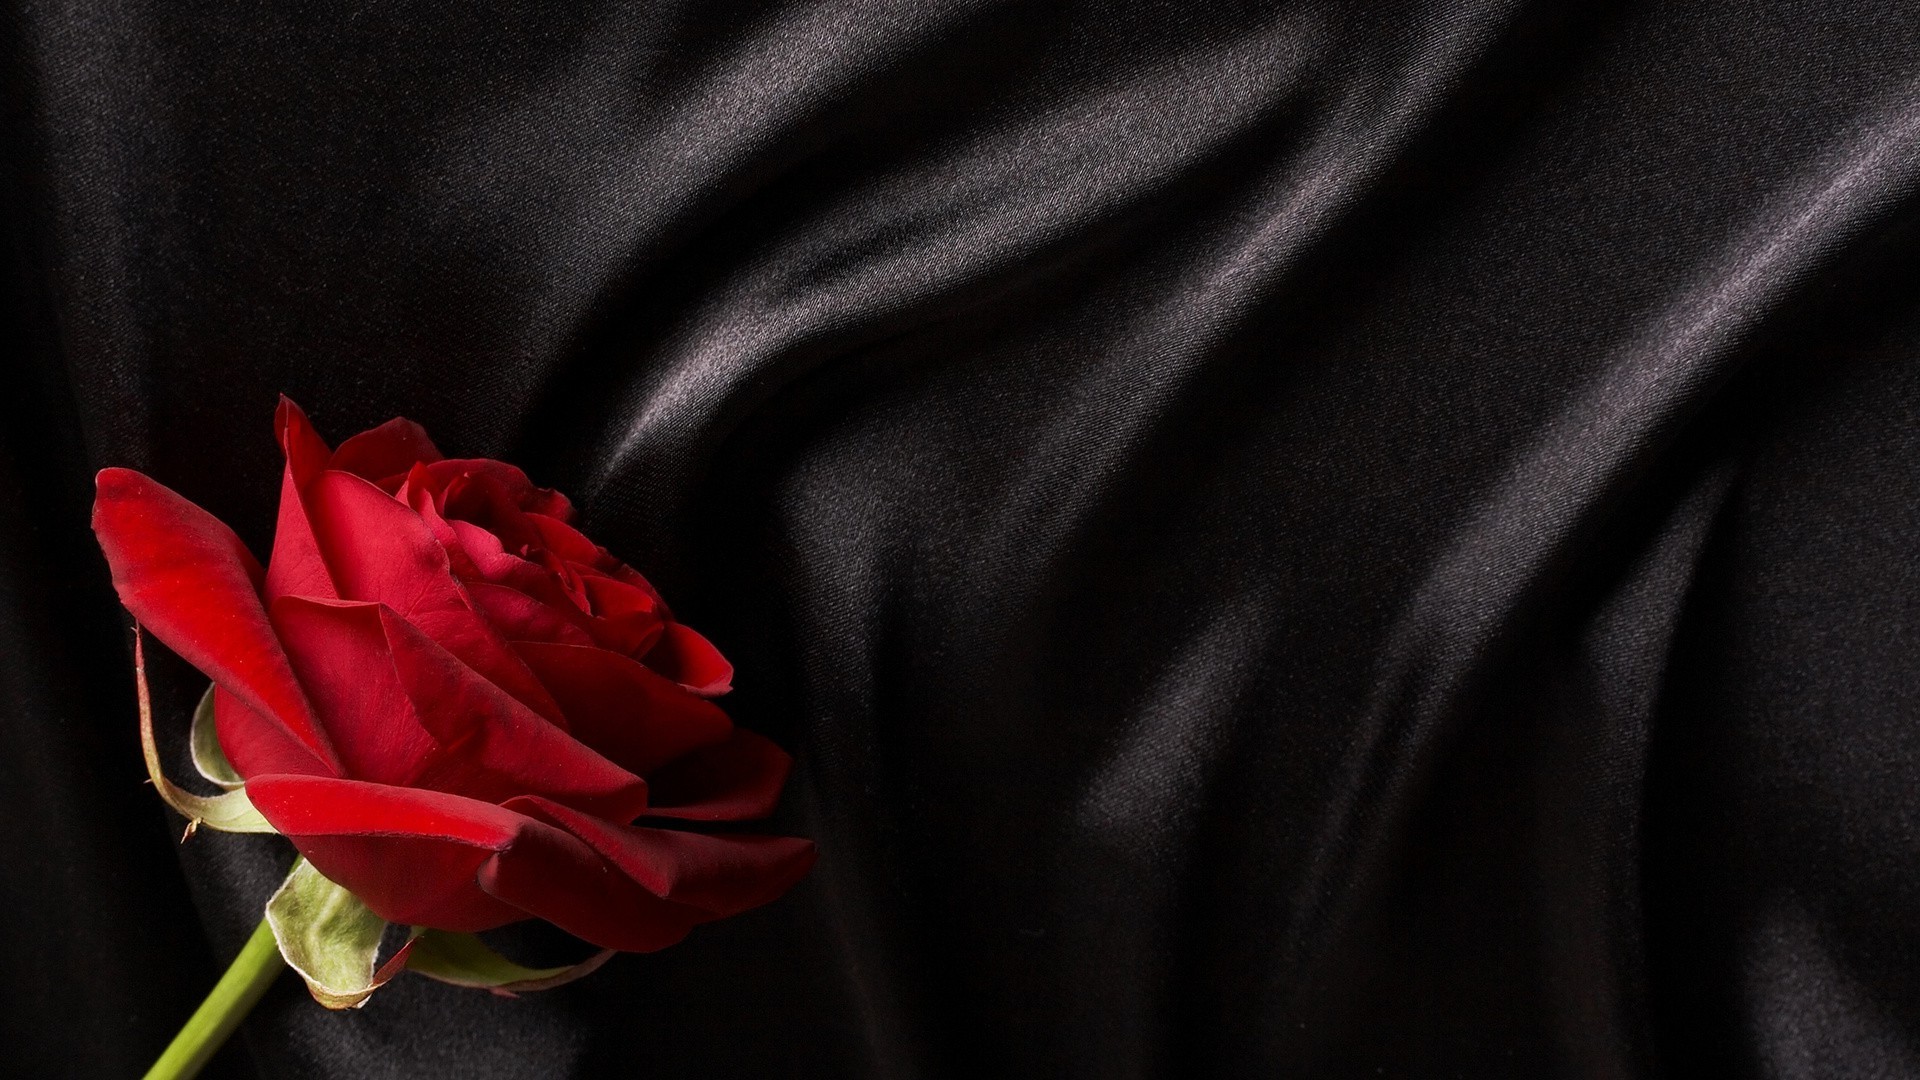 rose satin silk love delicate textile royalty wear romance fabric flower luxury velvet elegant